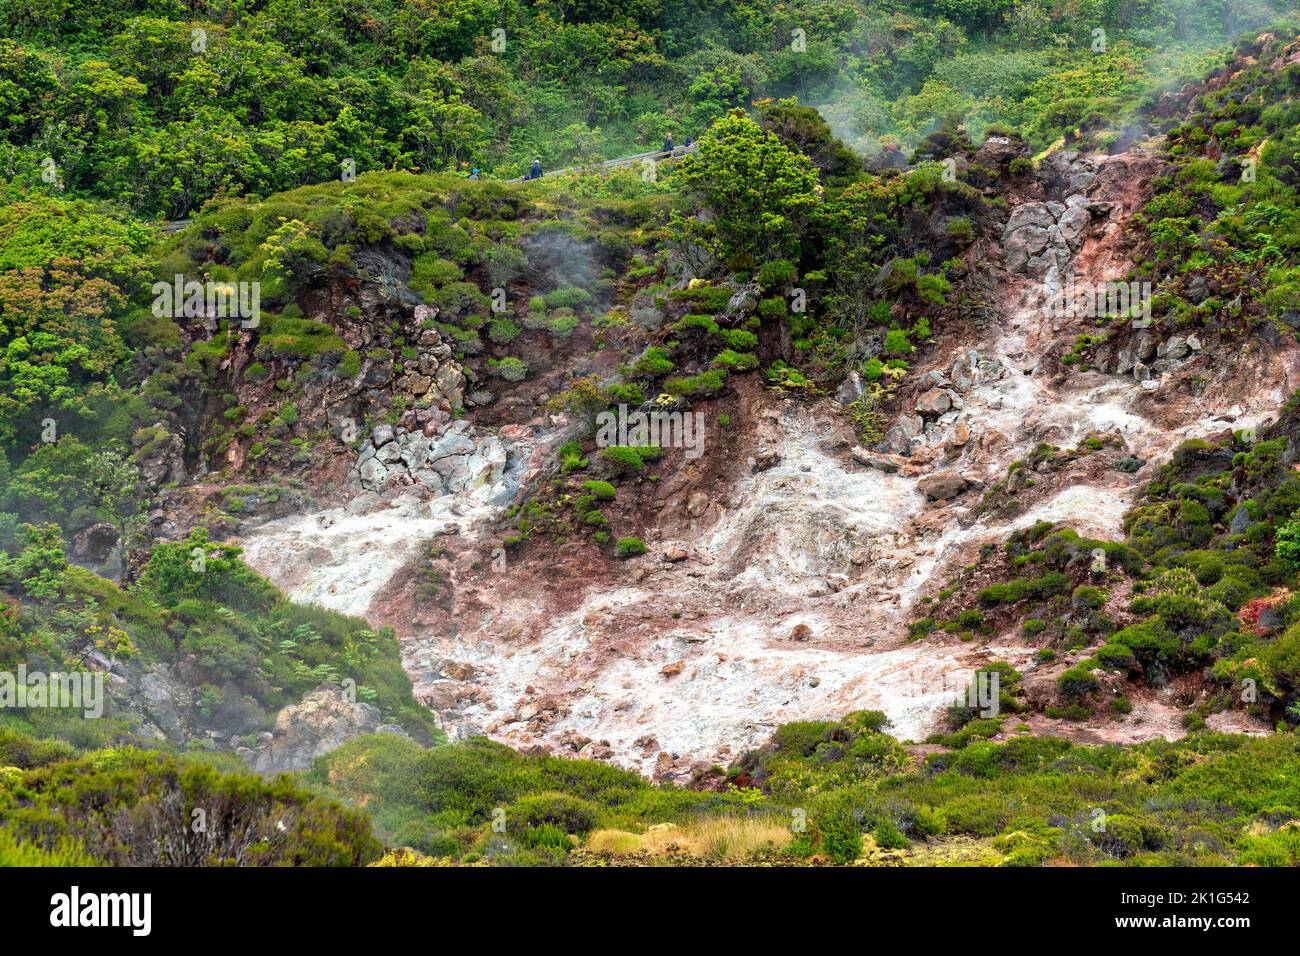 Le dioxyde de carbone et les gaz sulfurés s'échappent des fumaroles volcaniques dans le parc naturel de Furnas do Enxofre, sur l'île de Terceira, dans les Açores, au Portugal. Les Açores abritent 26 volcans actifs, dont 8 sous-marins. Banque D'Images